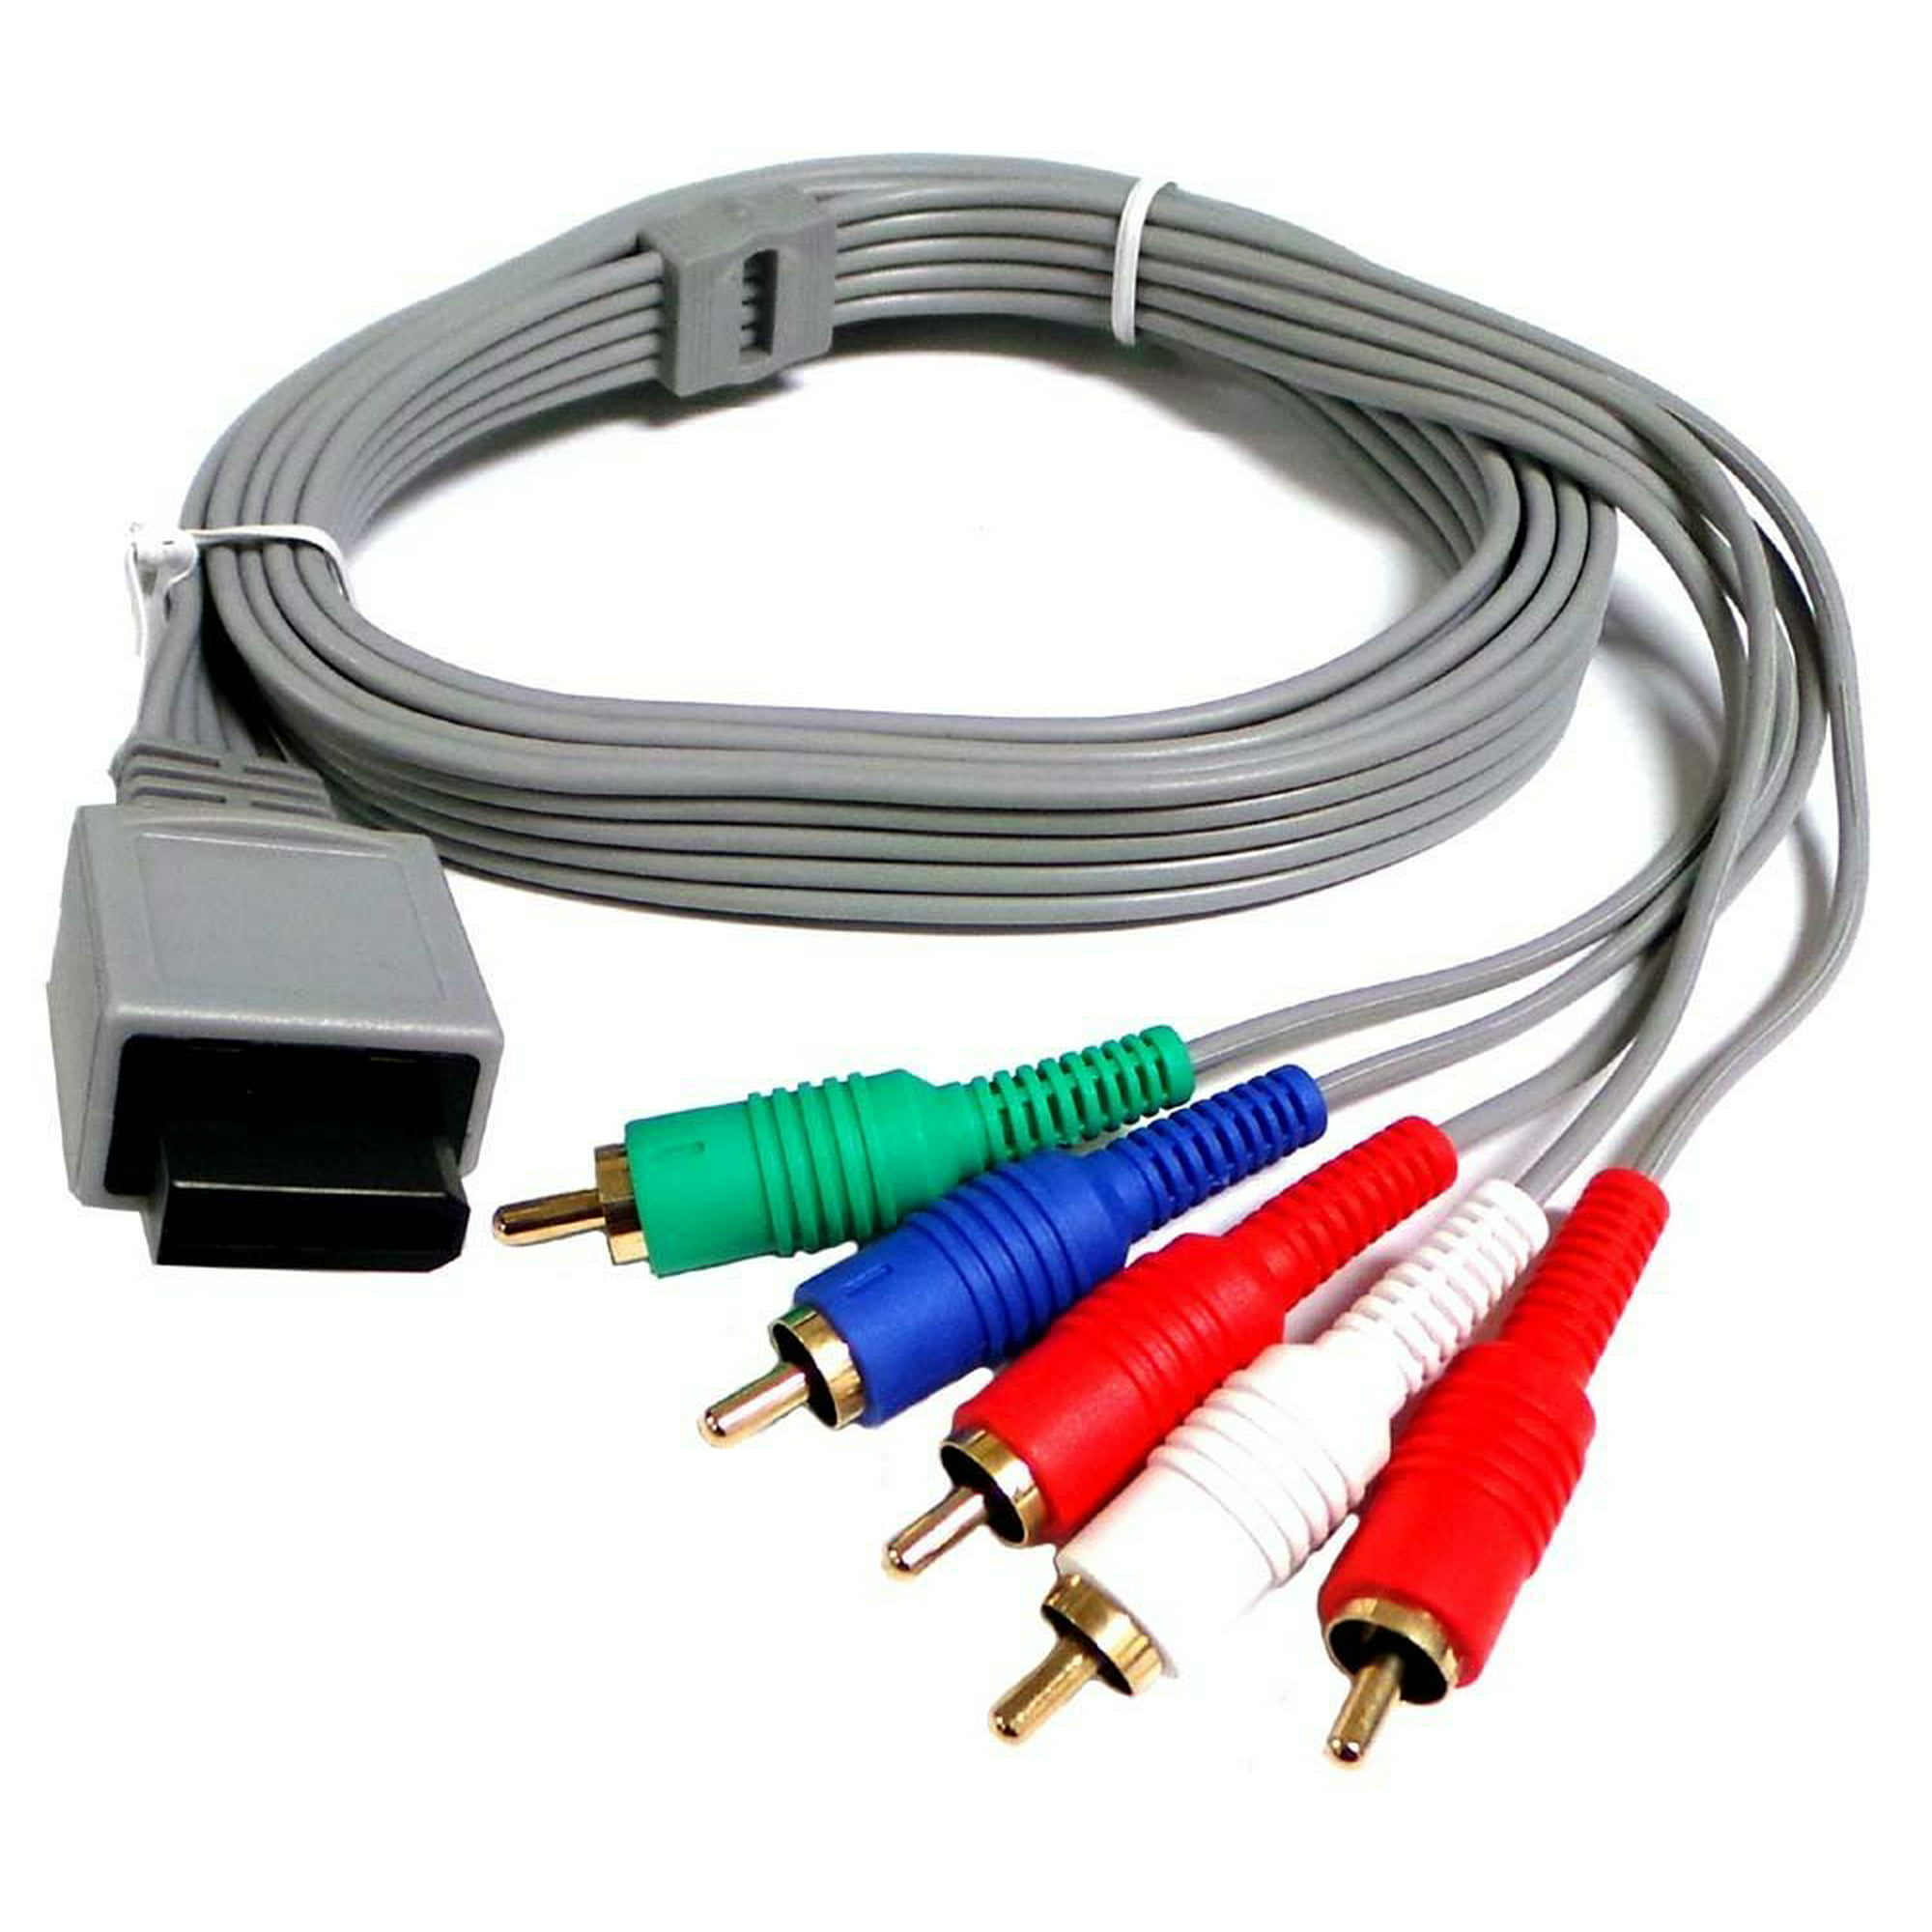 Компонентный. Nintendo Wii композитный кабель. Компонентный кабель Wii. Компонентный кабель Nintendo Wii Brooklyn. Компонентный кабель PPA 1210.